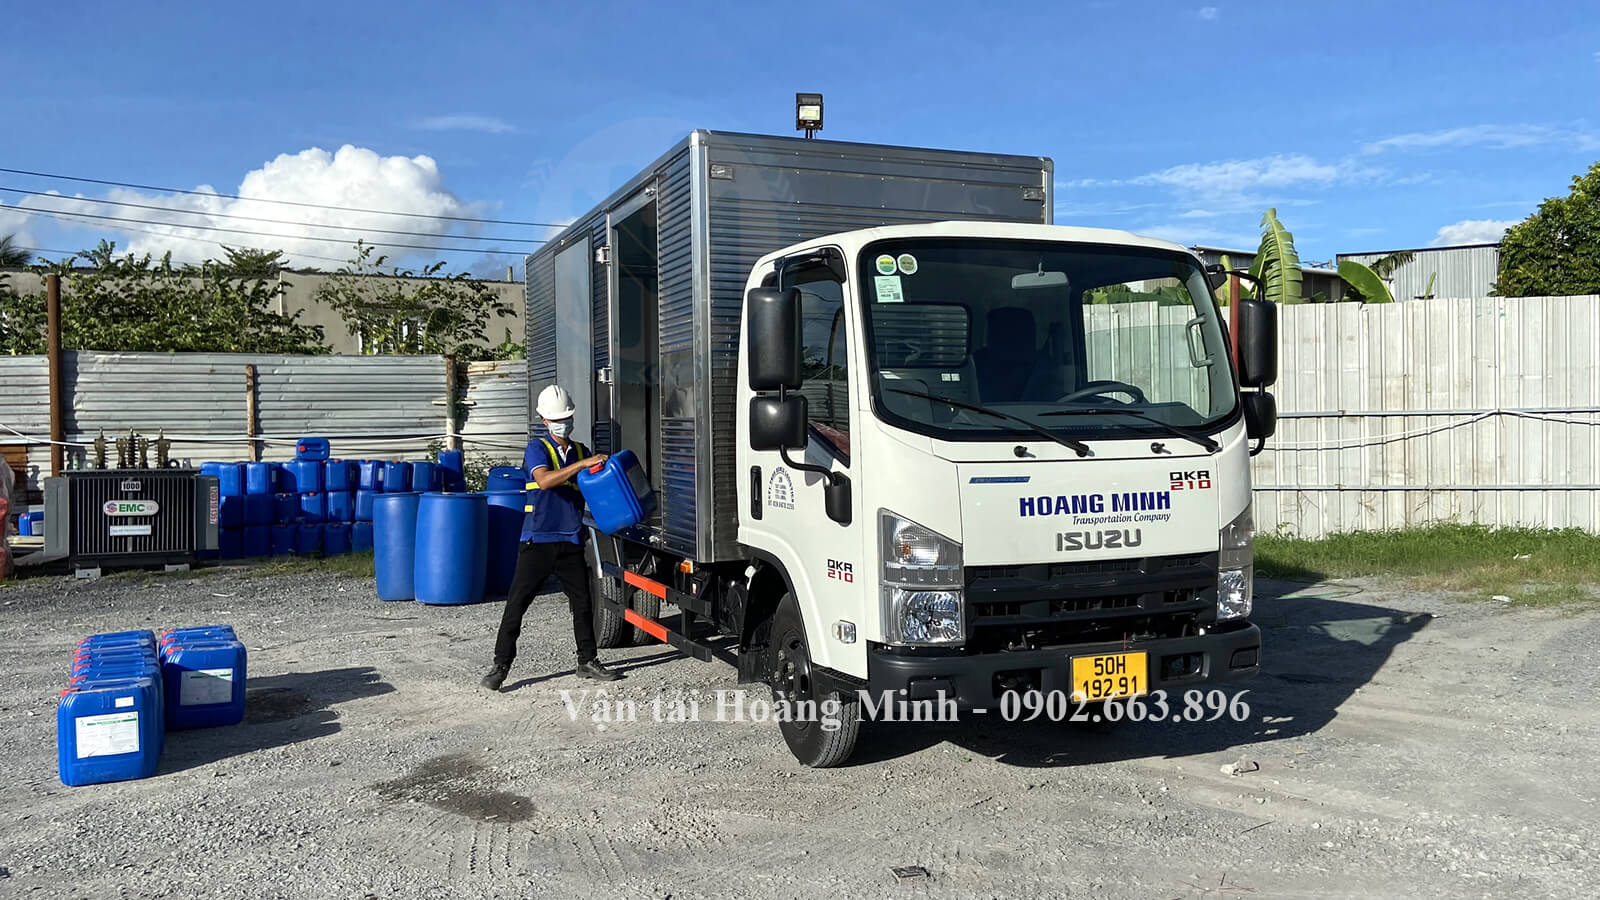 Hoàng Minh cho thuê xe tải chở hàng 2 tấn uy tín số 1 TpHCM.jpg